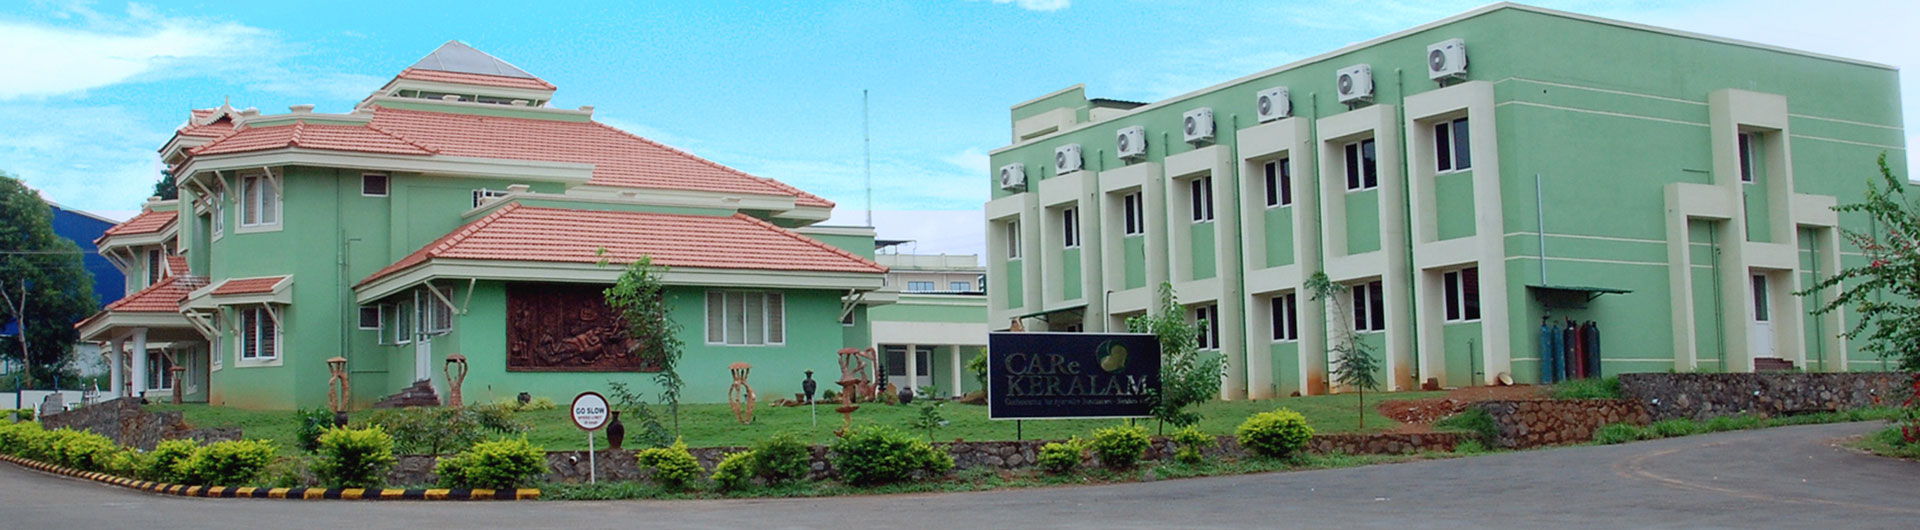 Care Keralam - Ayurvedic resource Centre